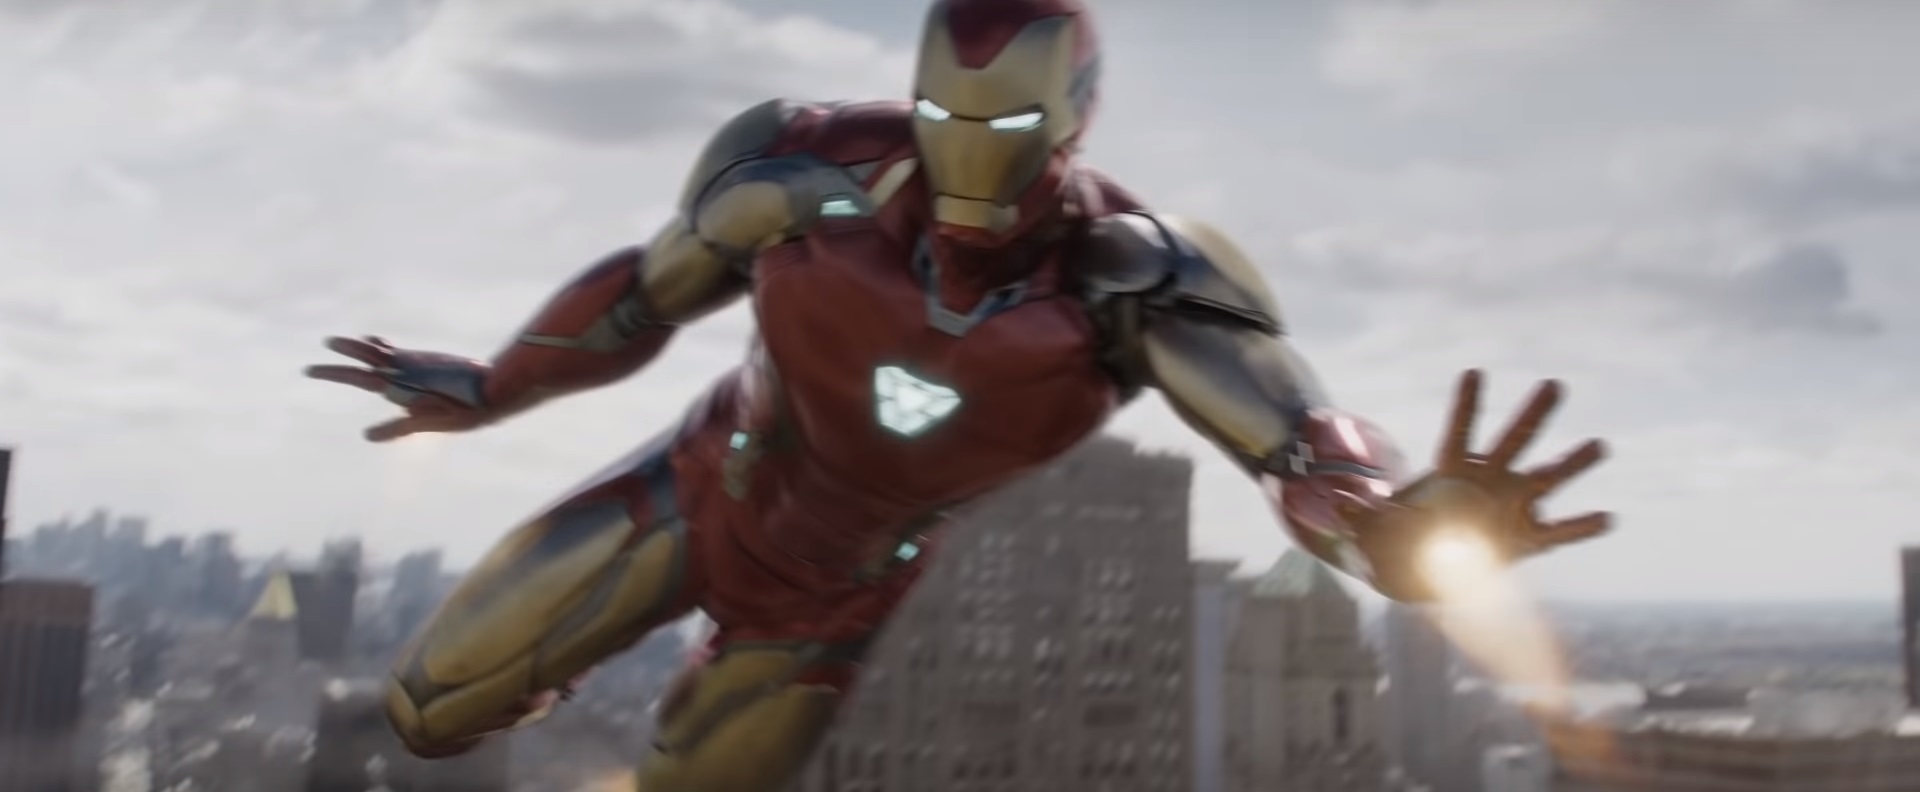 Robert Downey Jr. Returns As Tony Stark For Disney+’s “What If…”